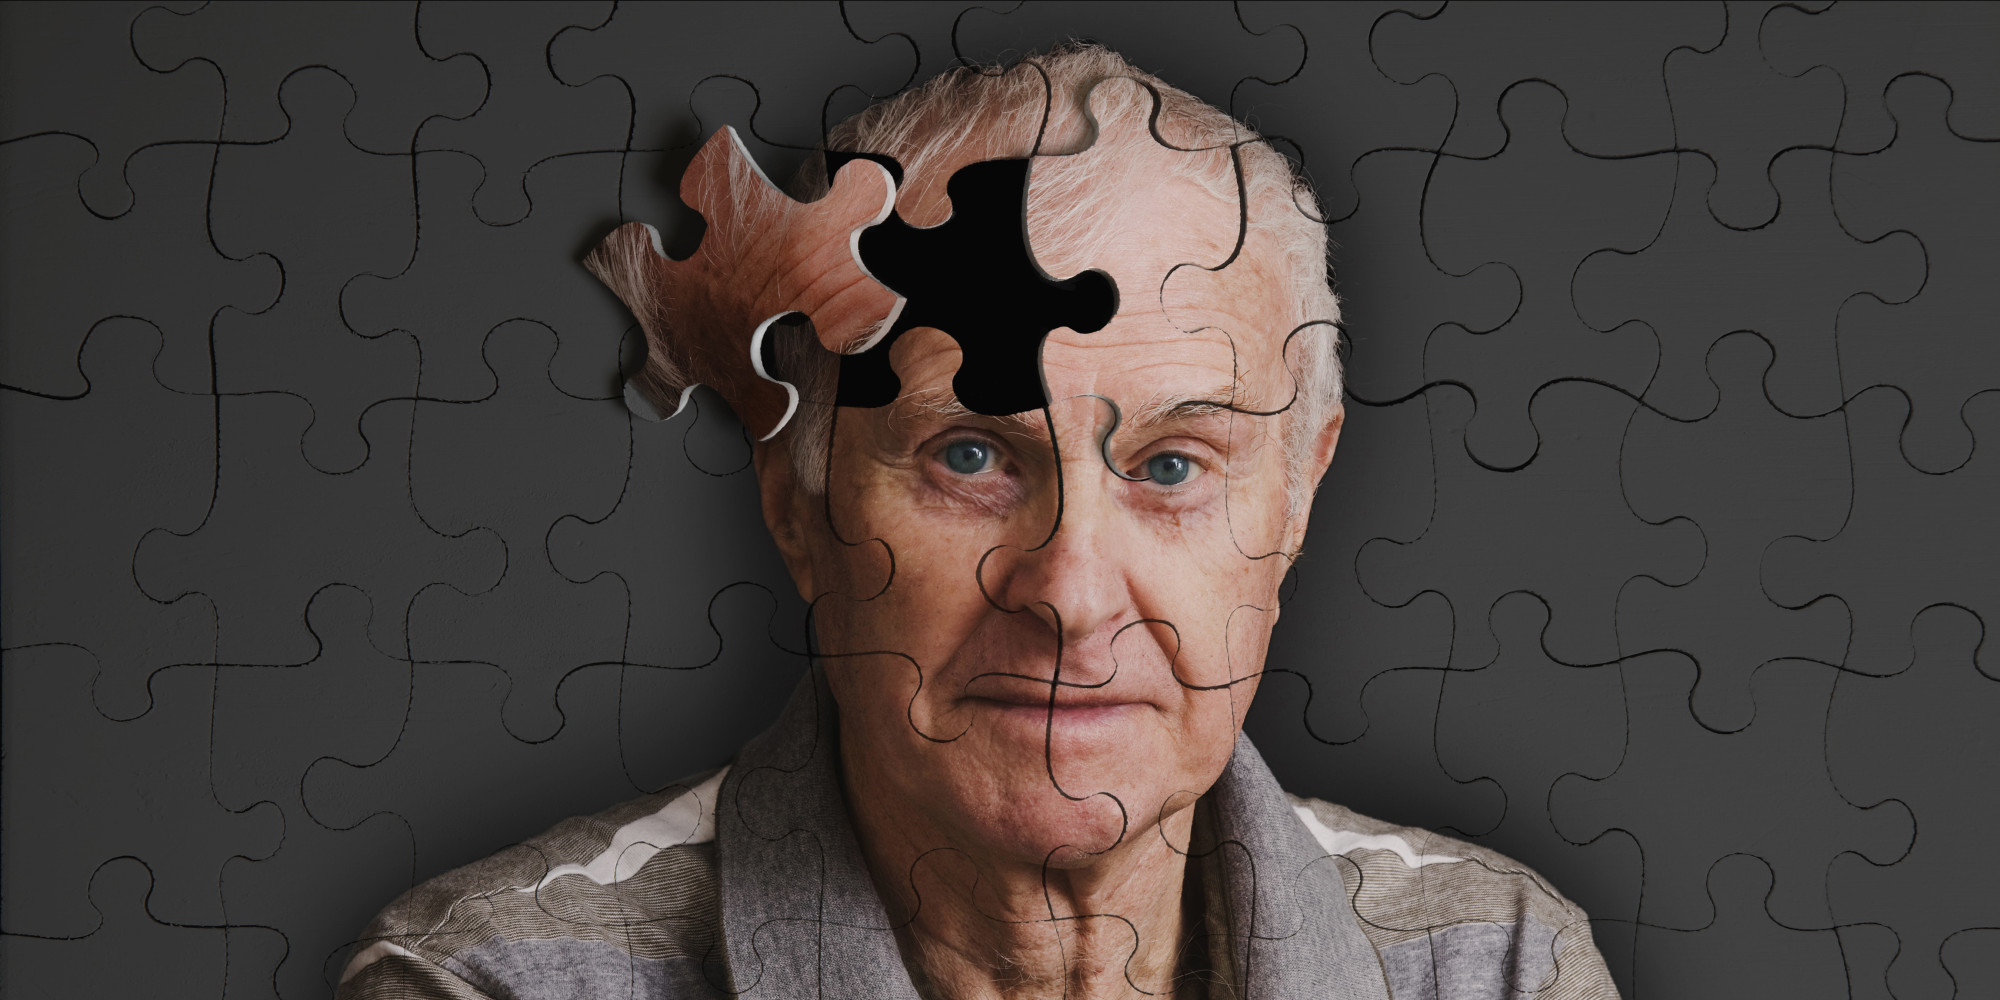 Μεγάλη ανακάλυψη: Βρέθηκε η στιγμή «εκκίνησης» του Αλτσχάιμερ – Ελπίδες για εκατομμύρια ηλικιωμένων